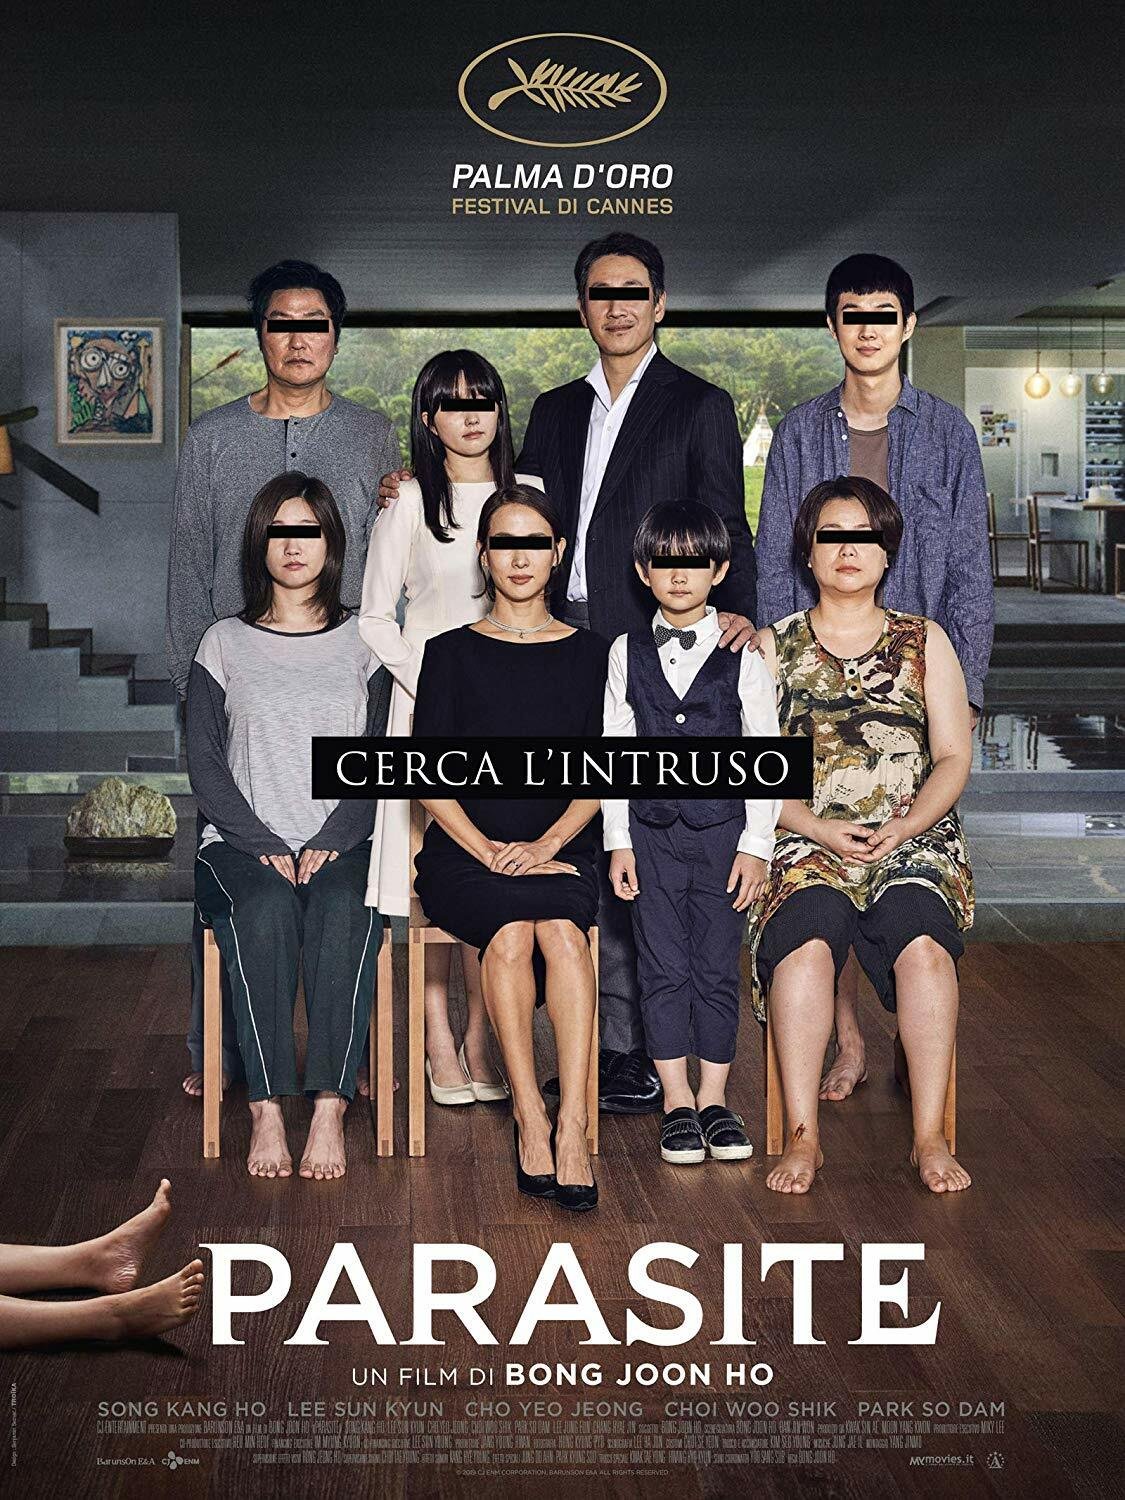 Il cast nella copertina del cofanetto Blu-ray di Parasite